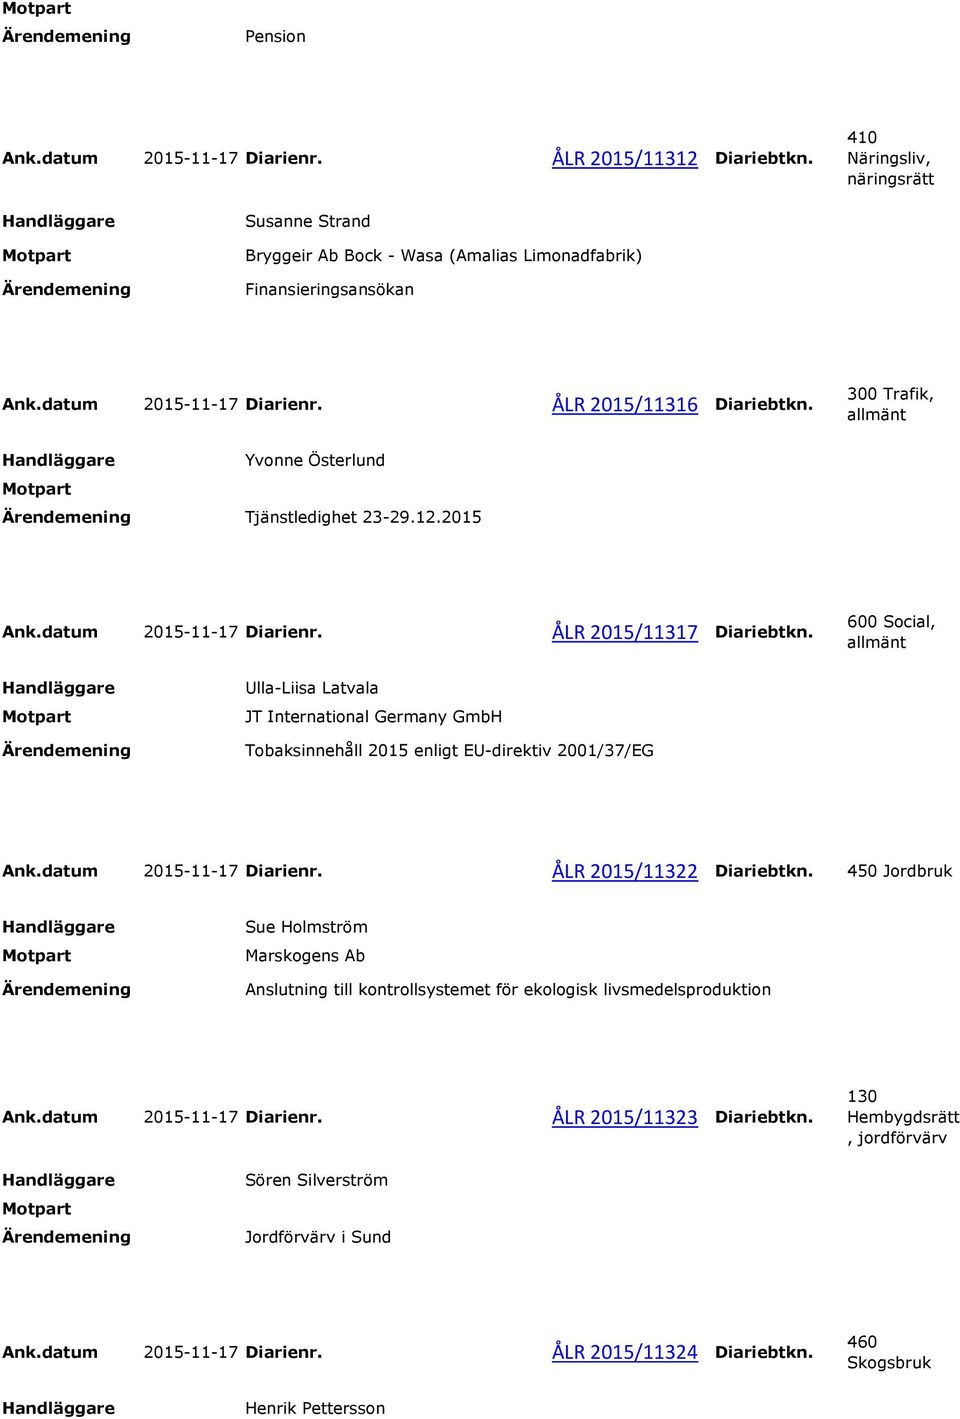 600 Social, Ulla-Liisa Latvala JT International Germany GmbH Tobaksinnehåll 2015 enligt EU-direktiv 2001/37/EG Ank.datum 2015-11-17 Diarienr. ÅLR 2015/11322 Diariebtkn.